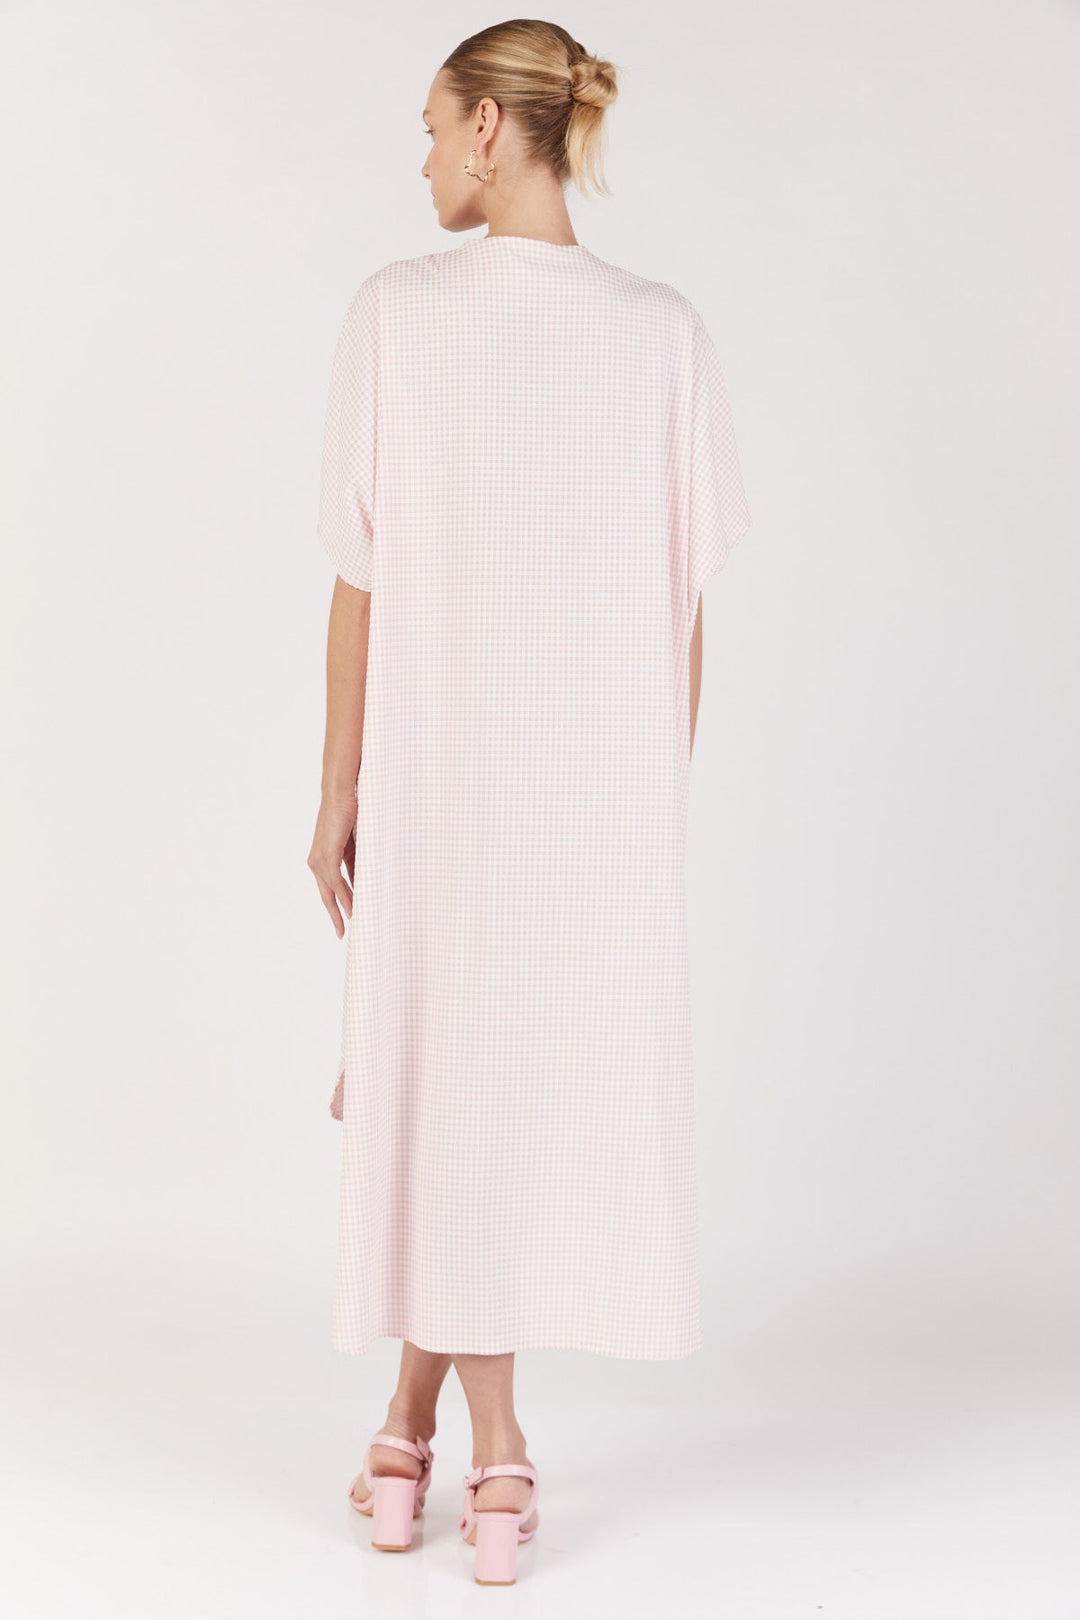 שמלת גלביה סנטוריני בצבע ורוד עם משבצות - Dana Sidi